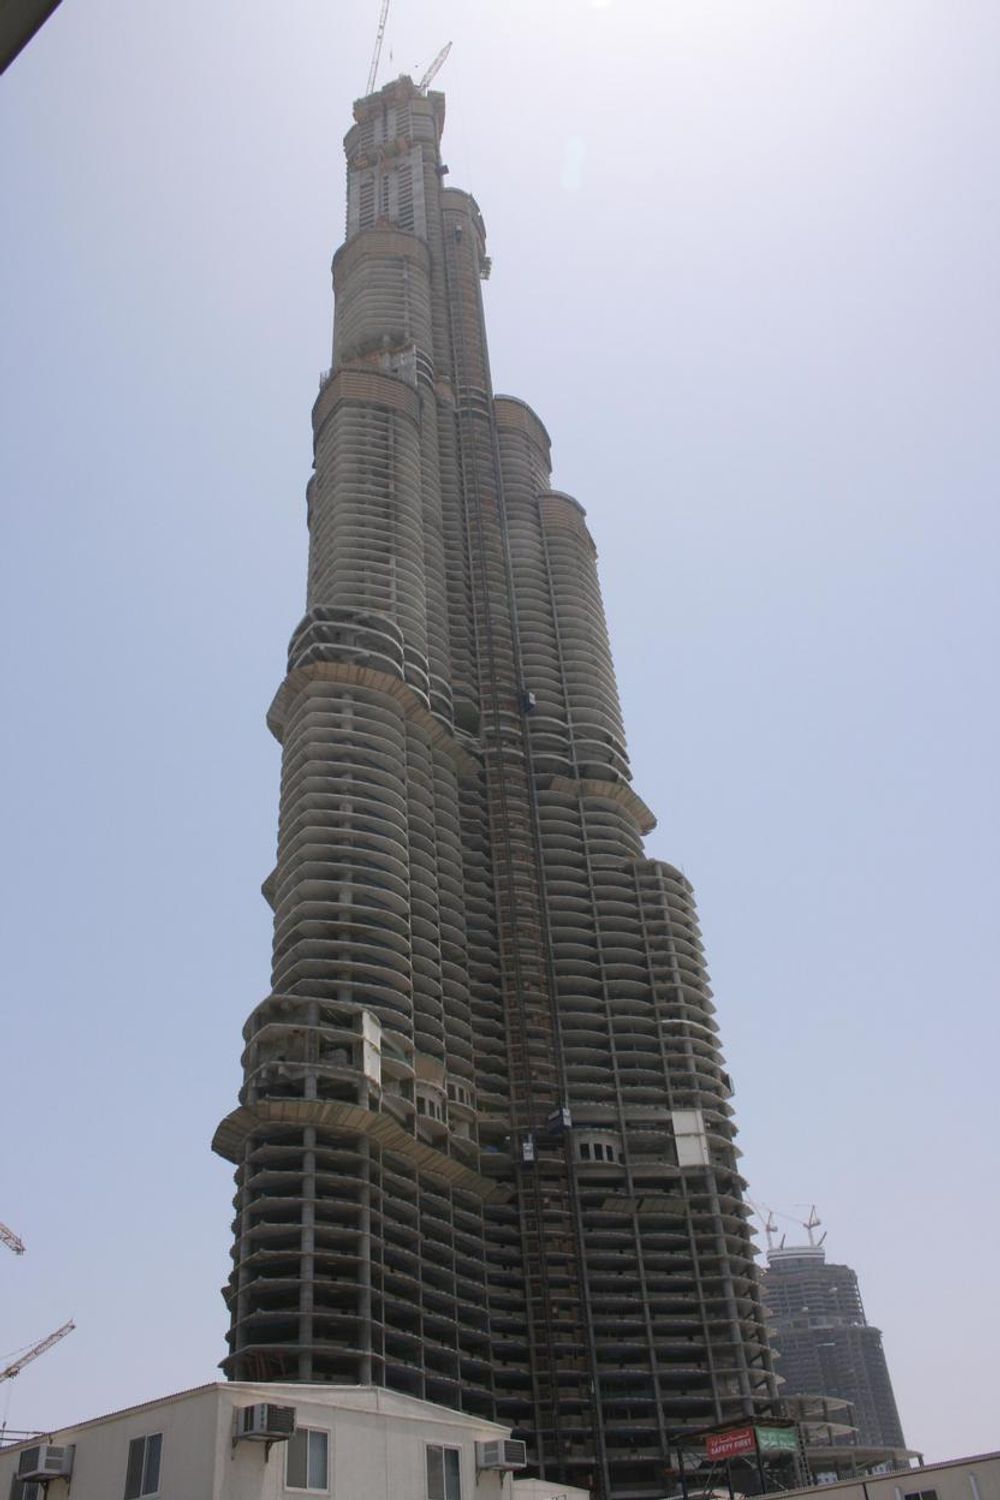 Verdens høyeste bygning - snart. I Dubai bygges det døgnet rundt på Burj Dubai og alle andre spektakulære bygninger. Når det står ferdig 30. desember 2008, vil det være 818 meter høyt, målt på toppen av antennen. Høyeste etasje er på 624,1 meter og taket på 643,3 meter. Det vil ha 164 etasjer. Åpning er satt til september 2009.